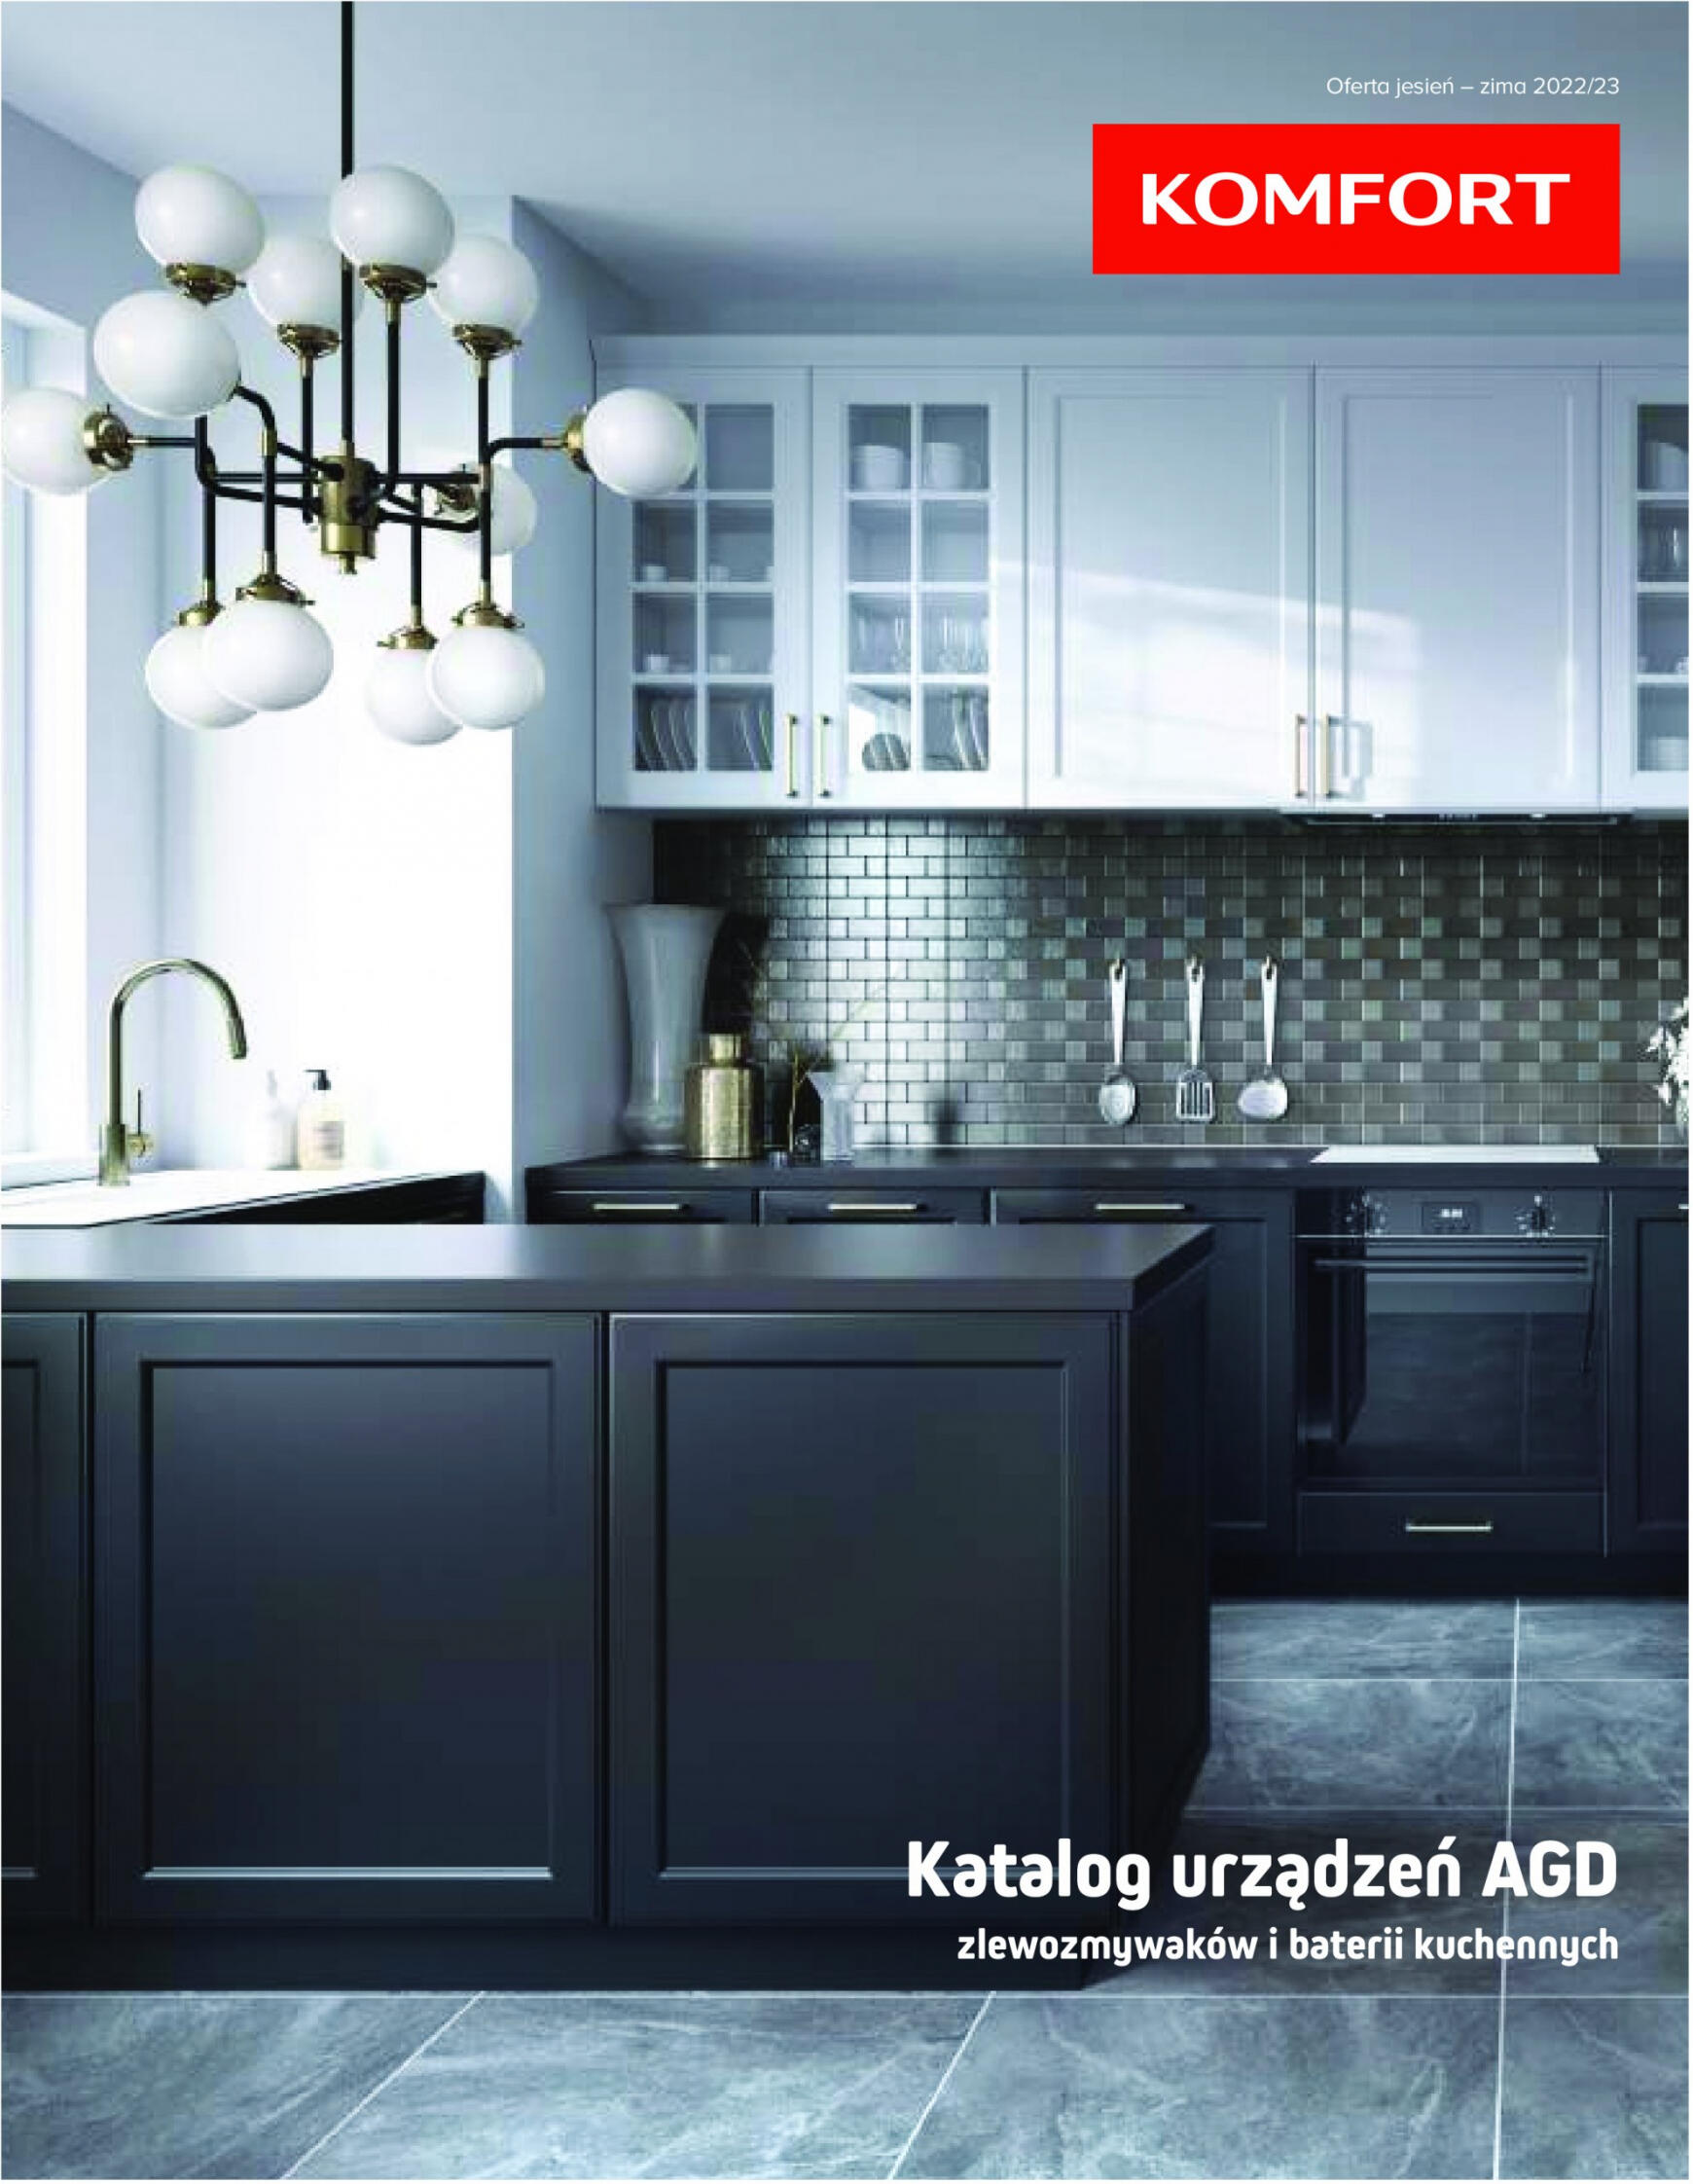 komfort - Komfort Katalog AGD